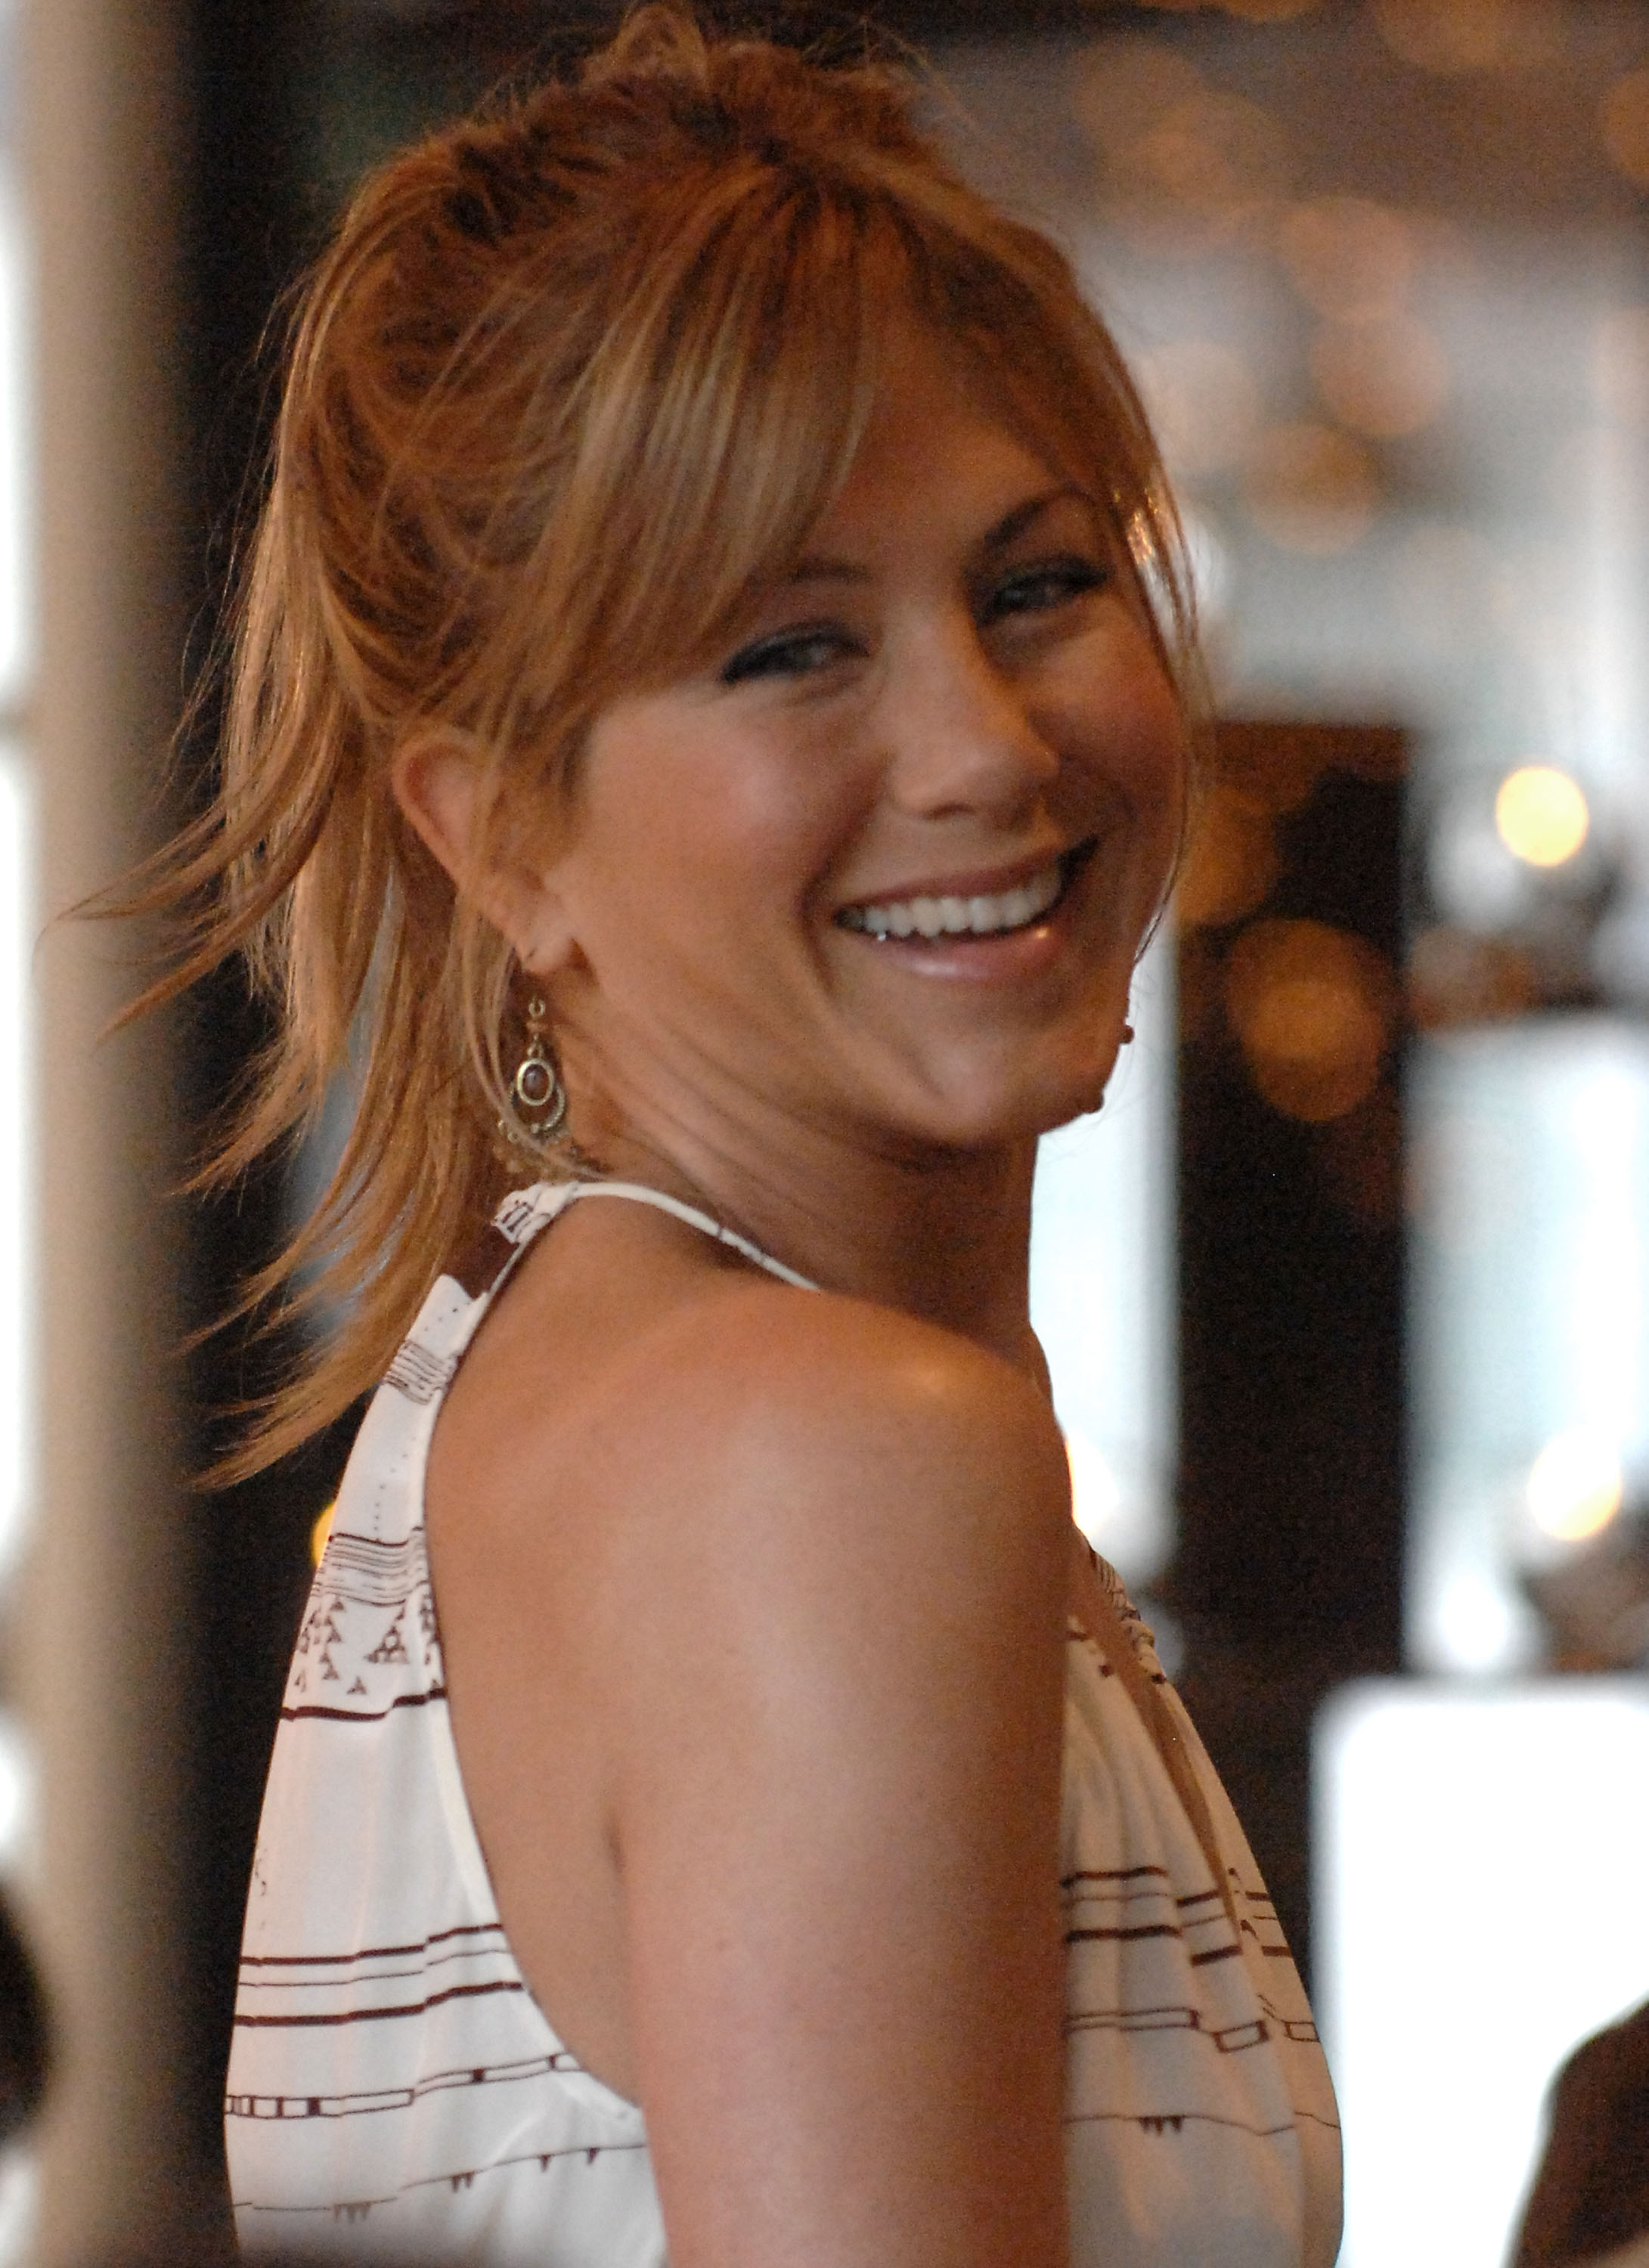 Jennifer Aniston rodando "Marley & Me" el 18 de abril de 2008, en Miami Beach, Florida. | Fuente: Getty Images